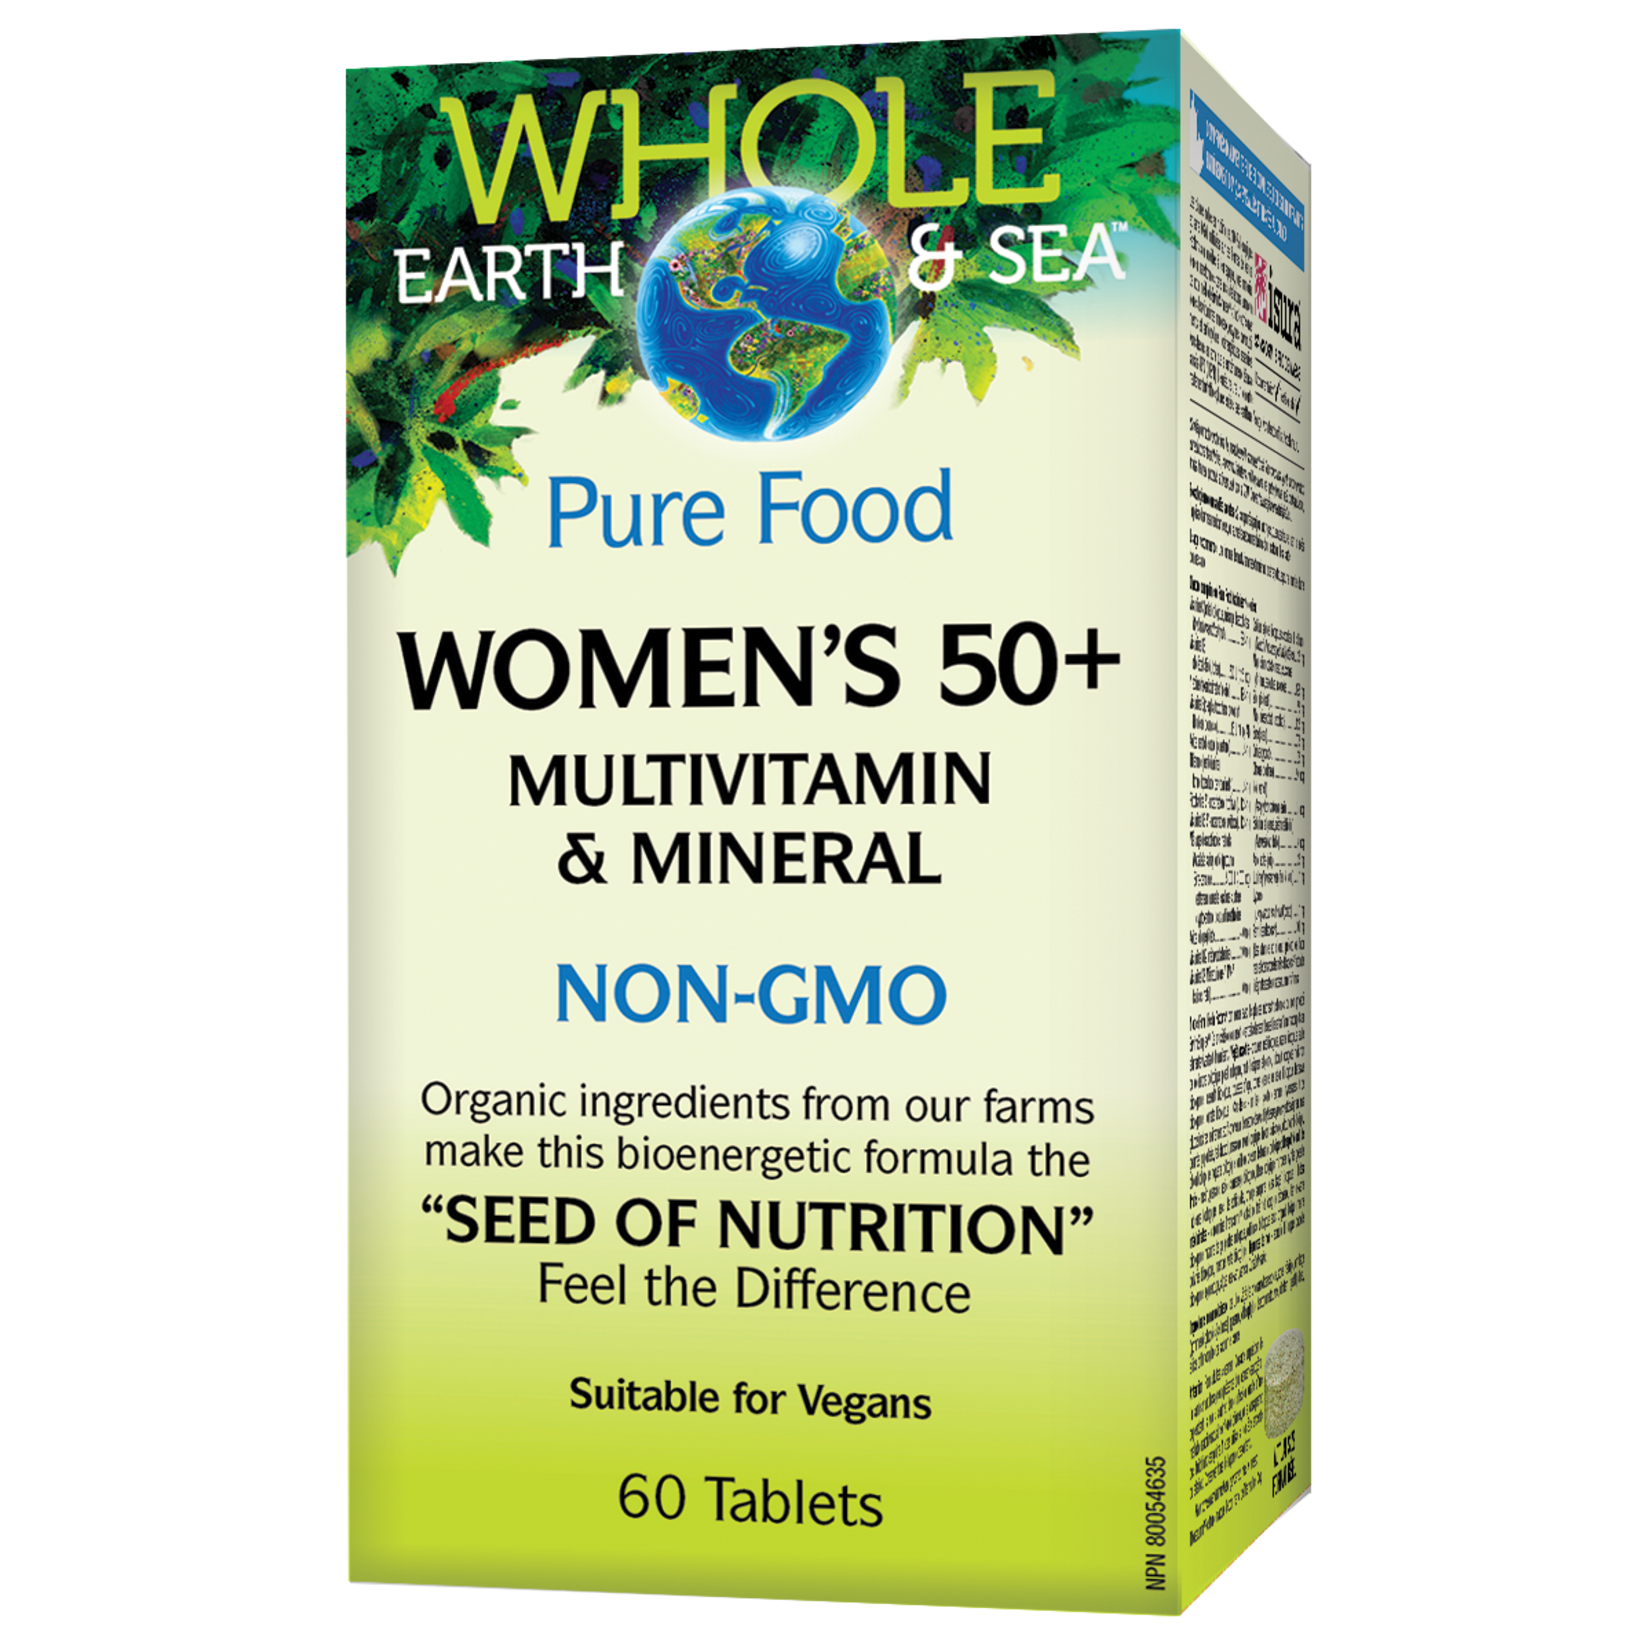 WHOLE EARTH & SEA WHOLE EARTH & SEA WOMEN'S 50+ MULTIVITAMIN & MINERAL 60 TABS